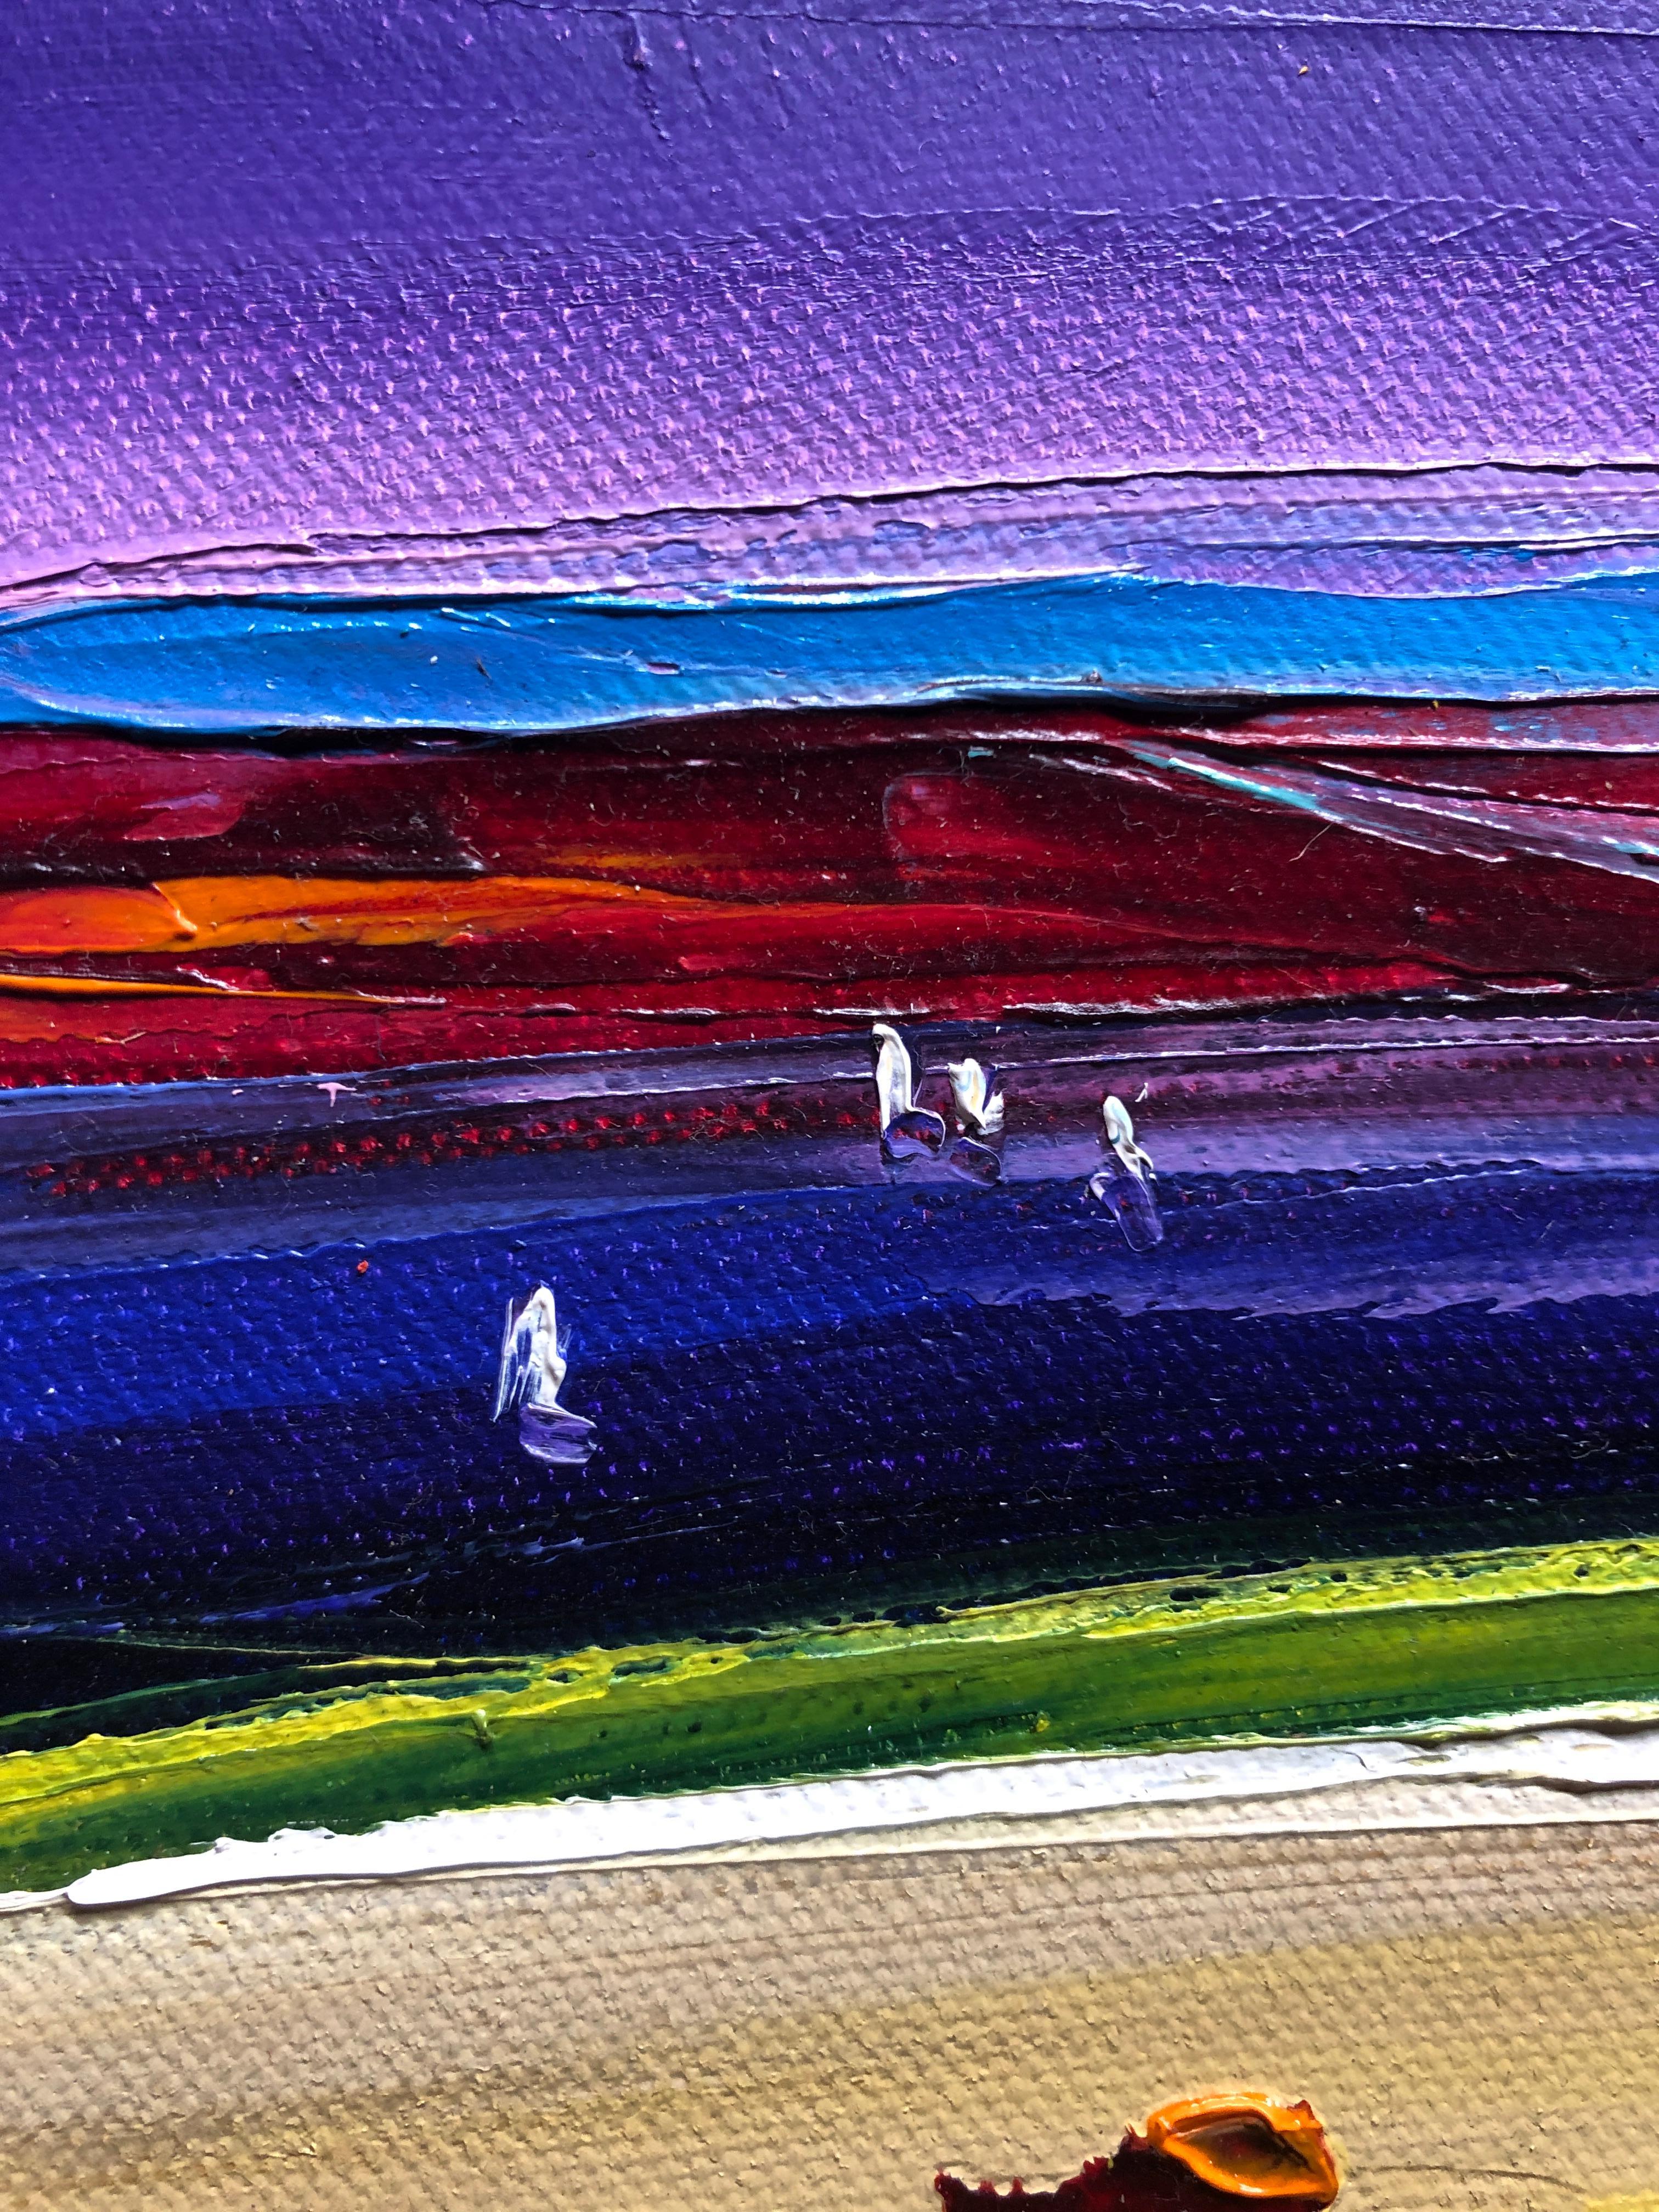 Landscape Vibrant Oil Painting Palette Knife 16x12